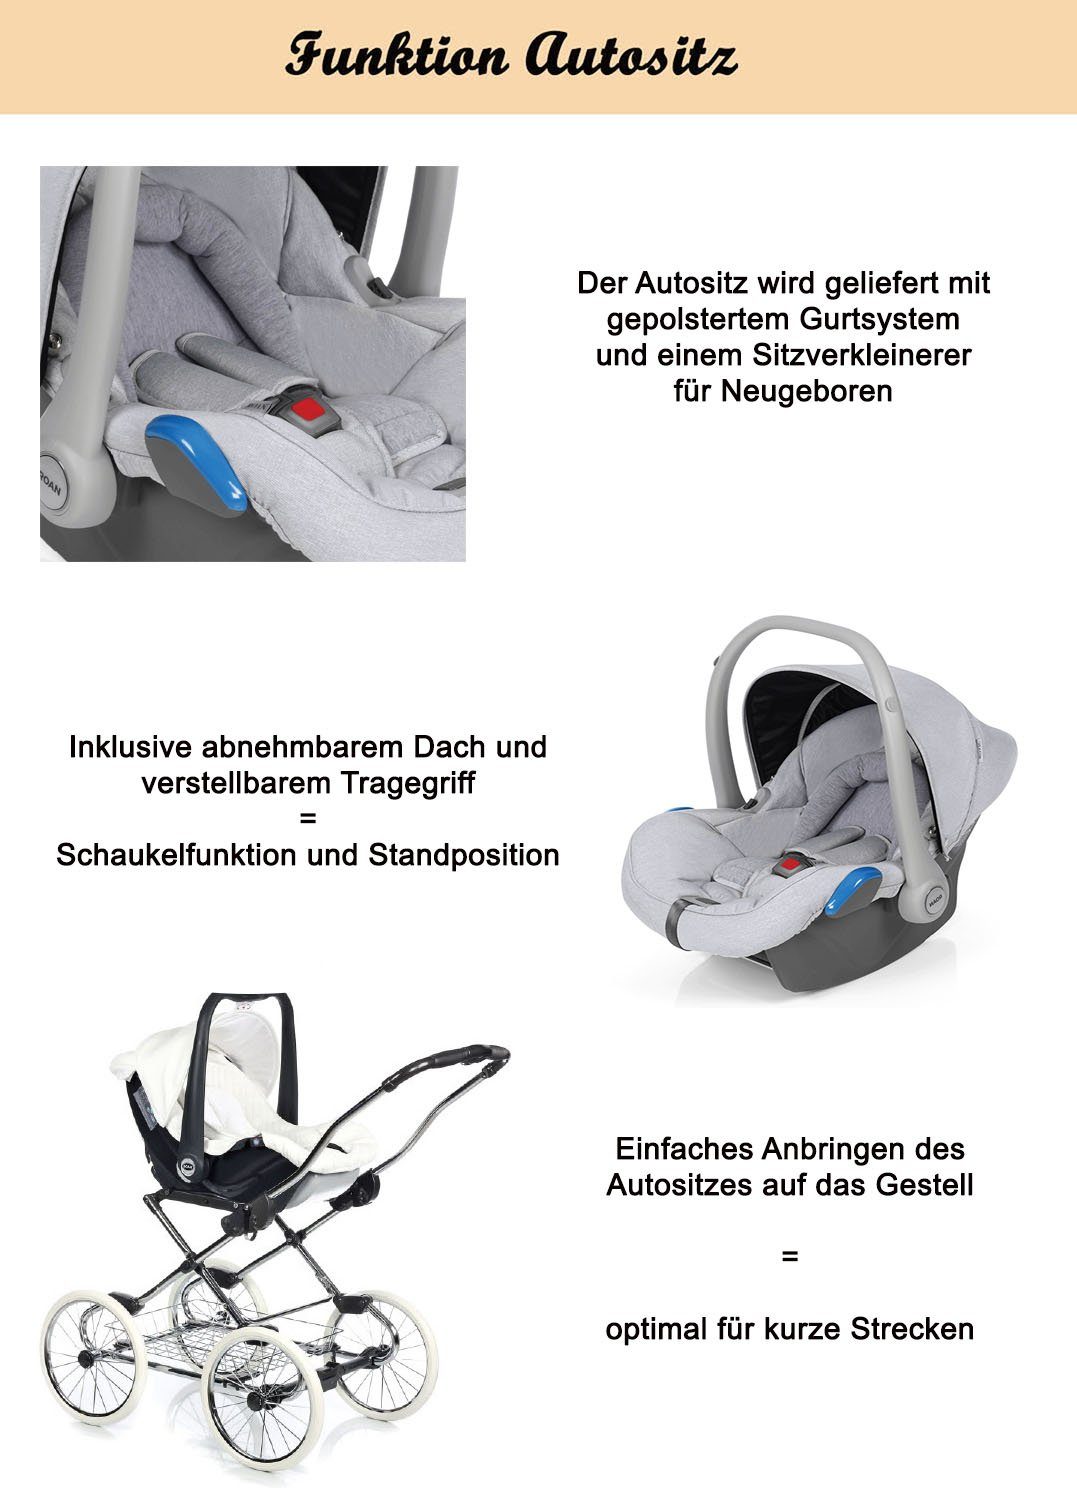 Autositz Teile 4 3 in Kombi-Kinderwagen Roan Marita 13 1 - Designs - Schwarz (P-231) inkl. in